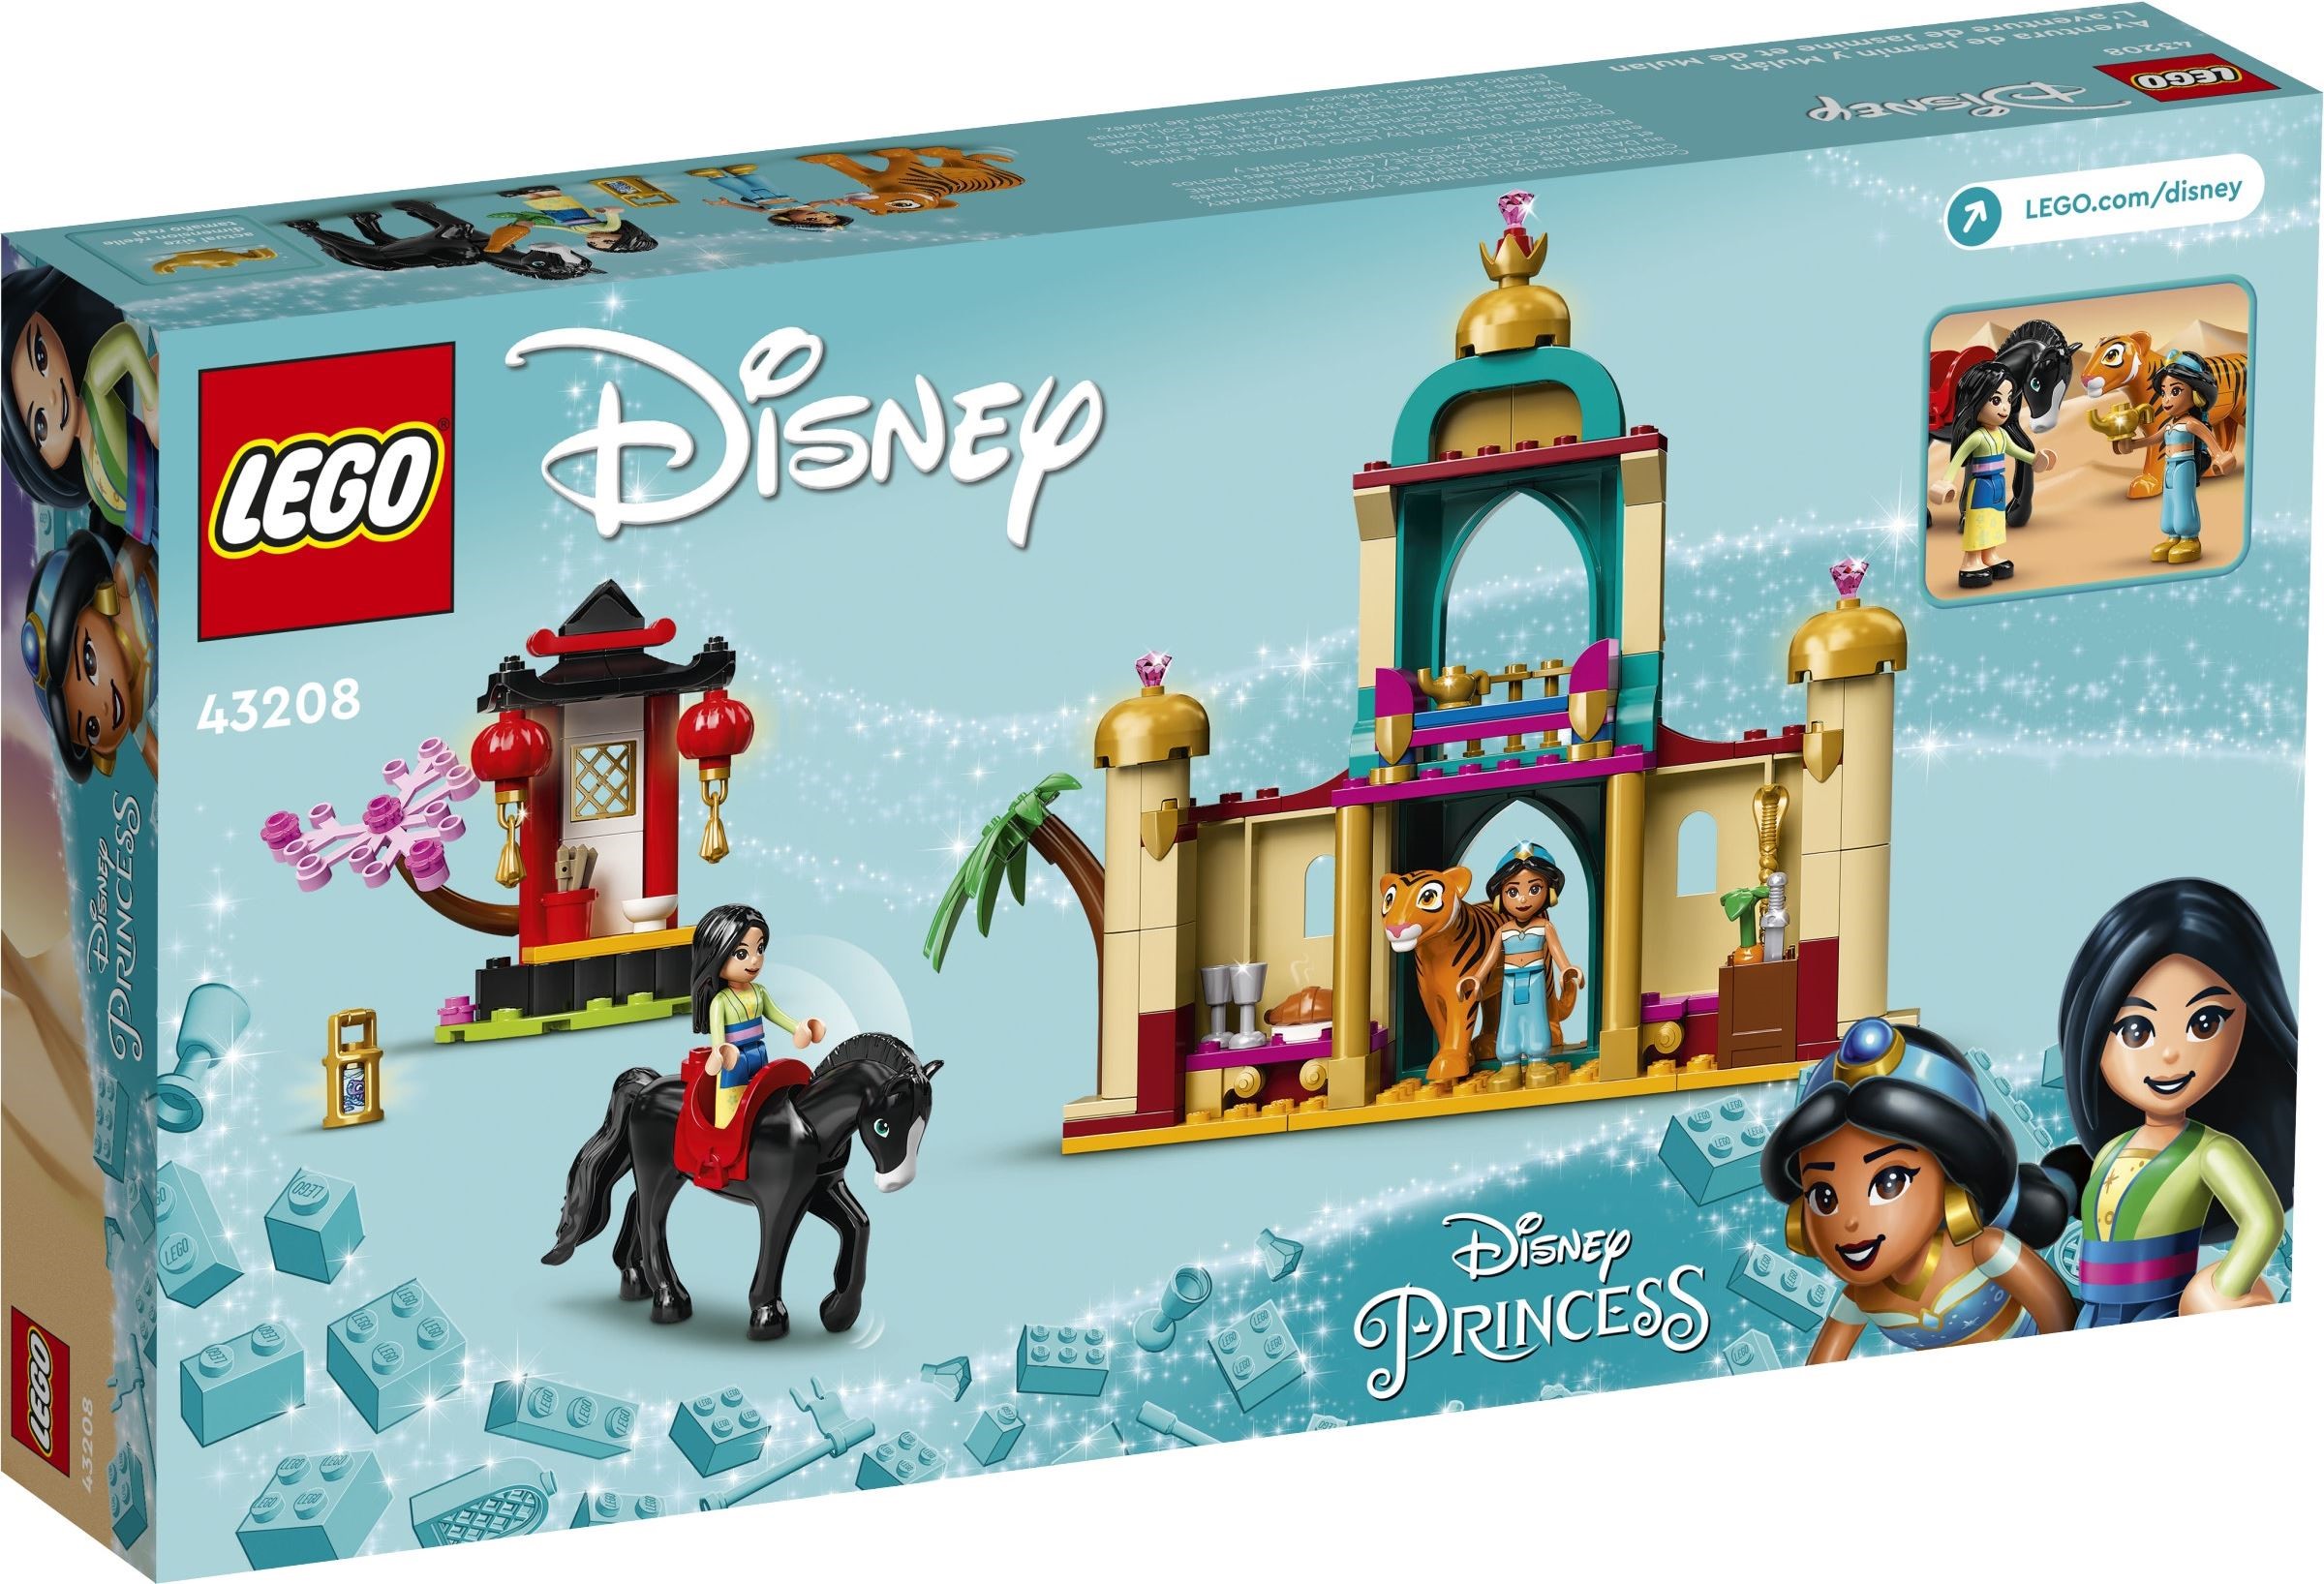 LEGO® Disney 43208 - Jasmins und Mulans Abenteuer